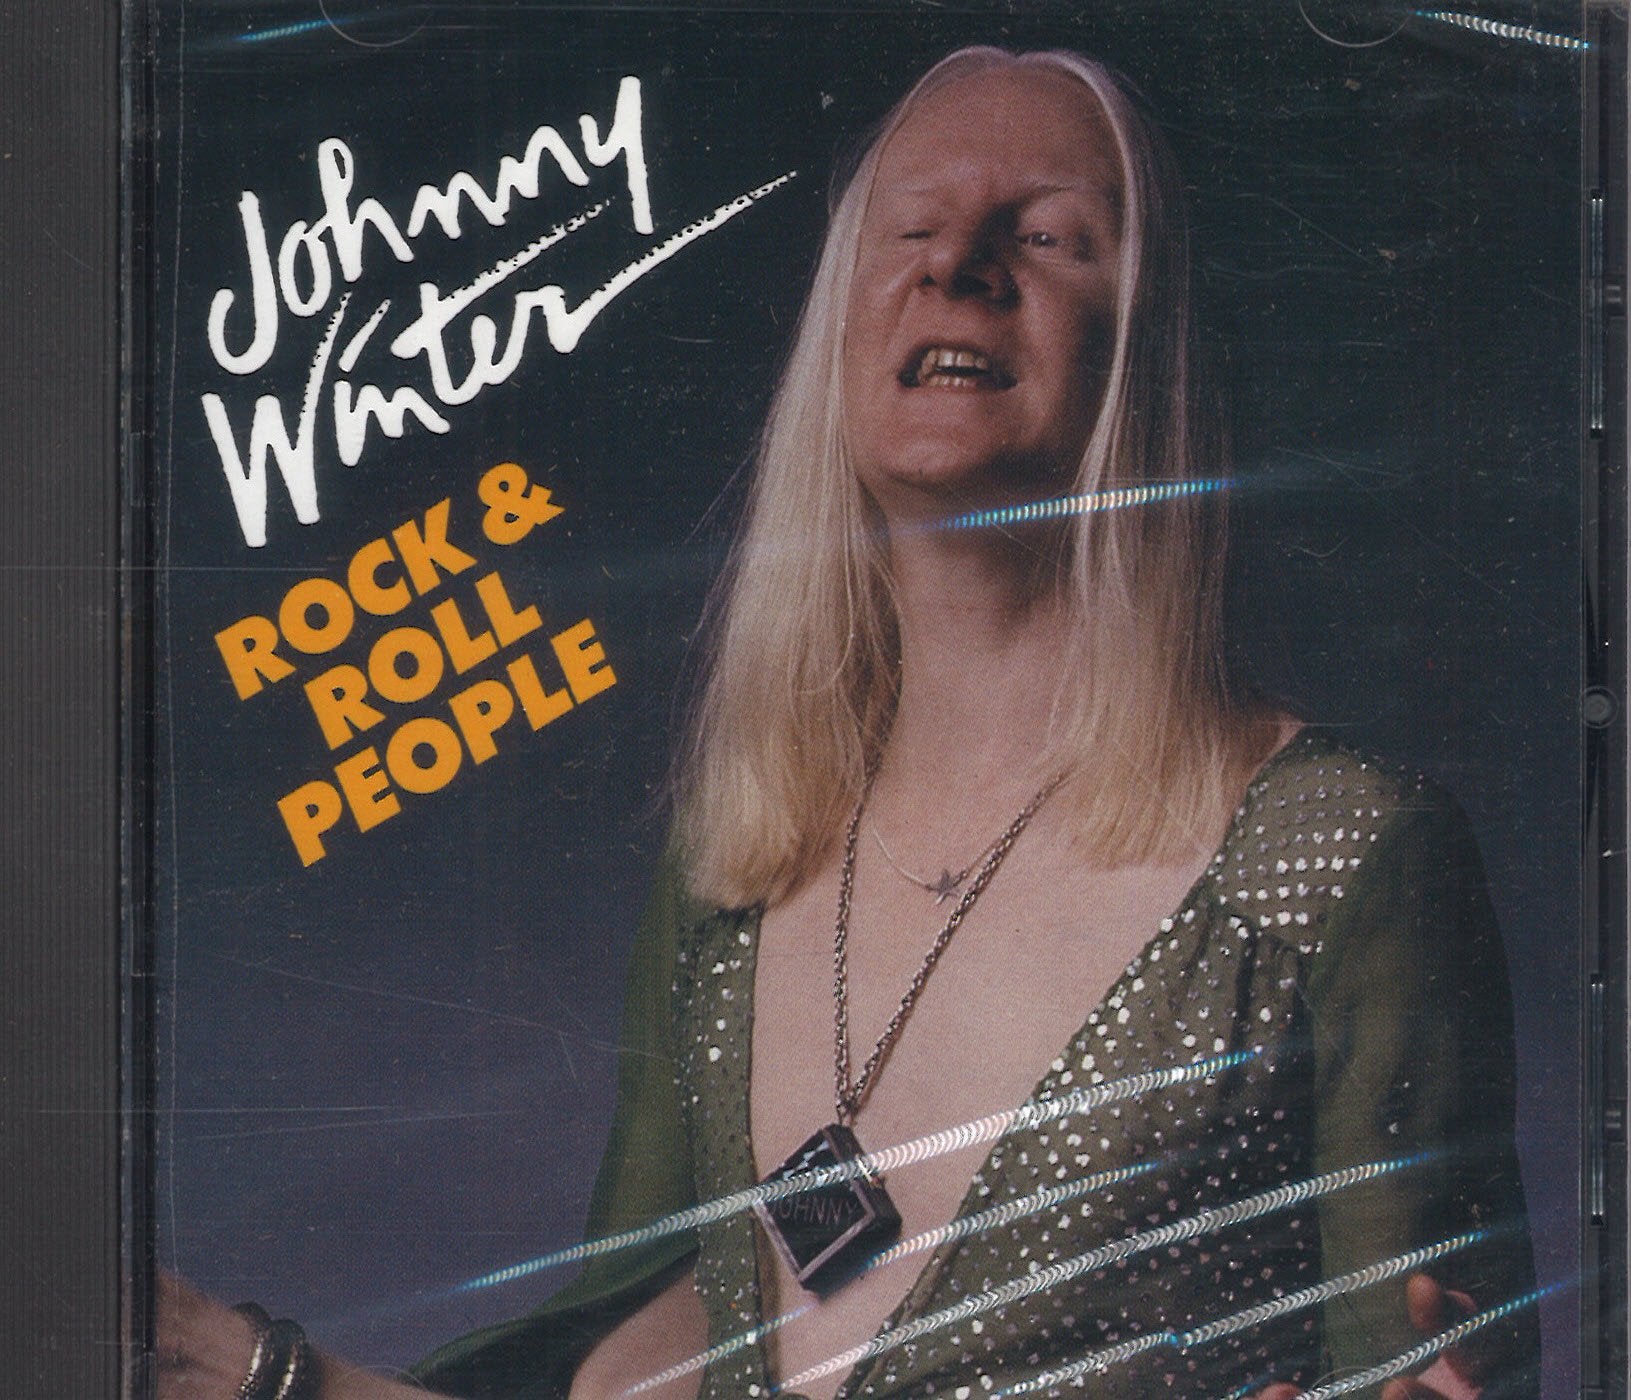 Johnny Winter Rock & Roll People